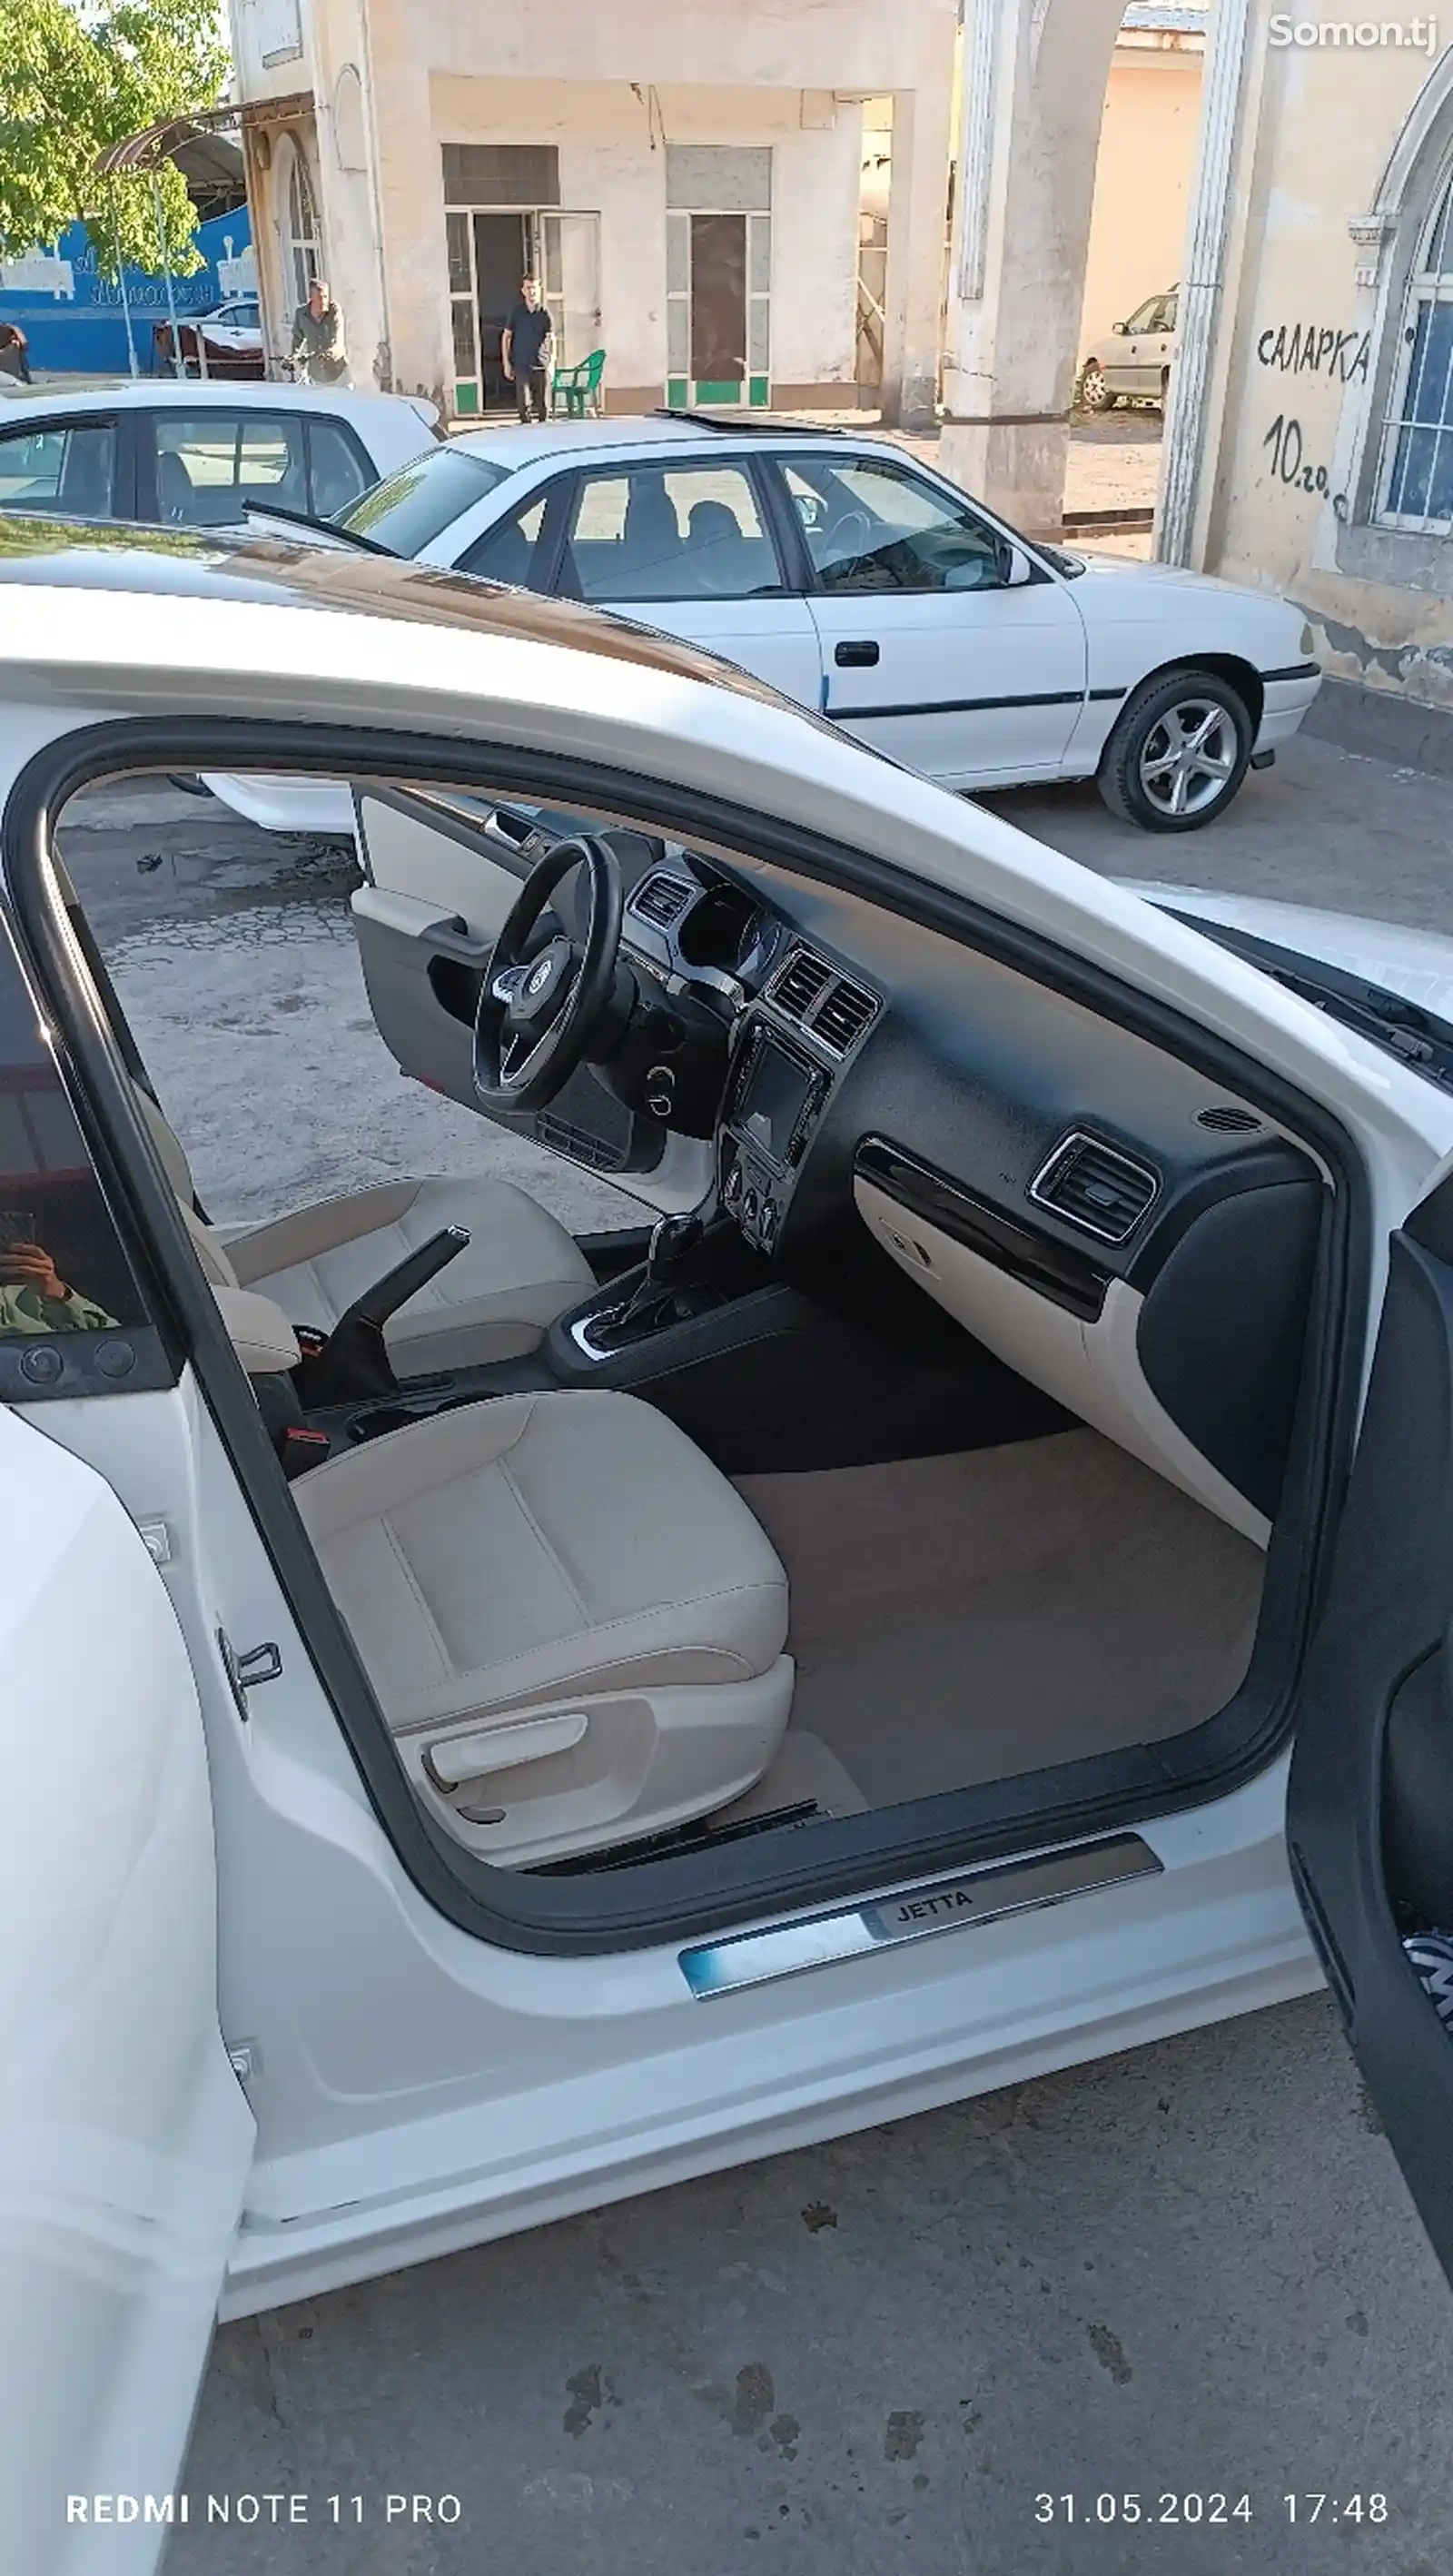 Volkswagen Jetta, 2011-5